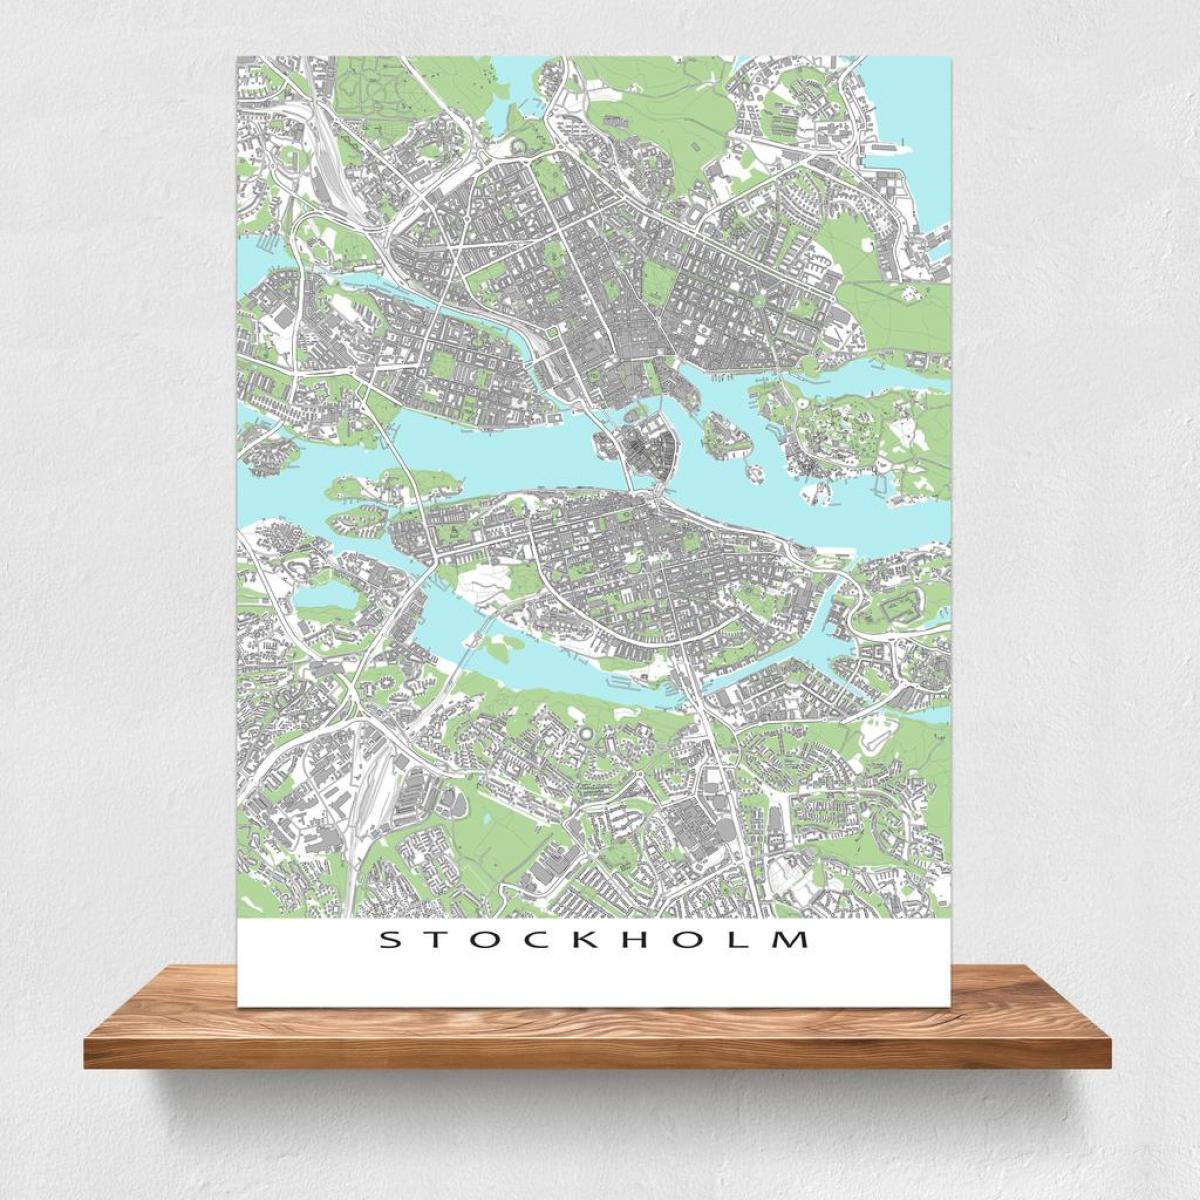 зураг Стокгольм газрын зураг хэвлэх